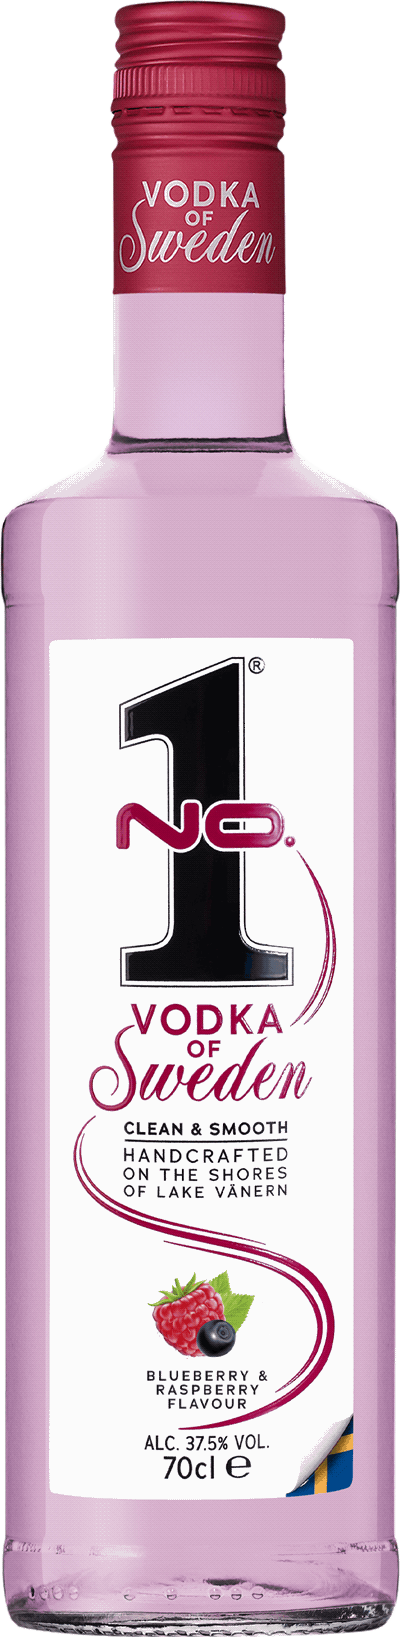 Produktbild för No.1 Premium Vodka